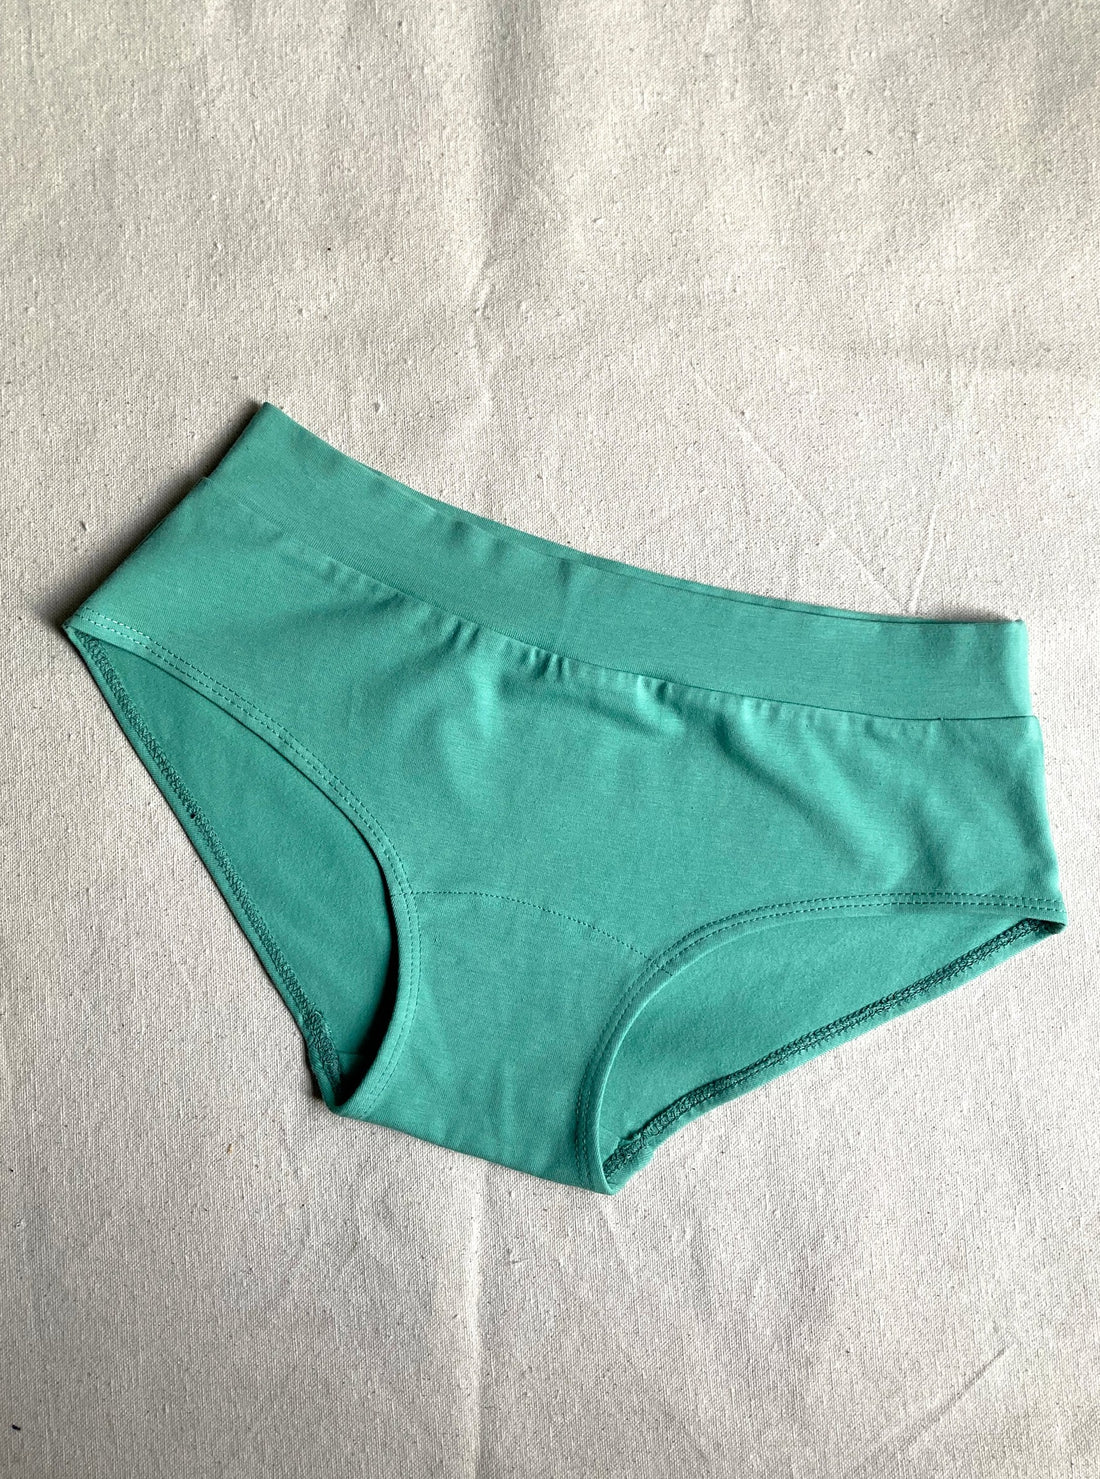 Always Wear Clean Underwear – gully